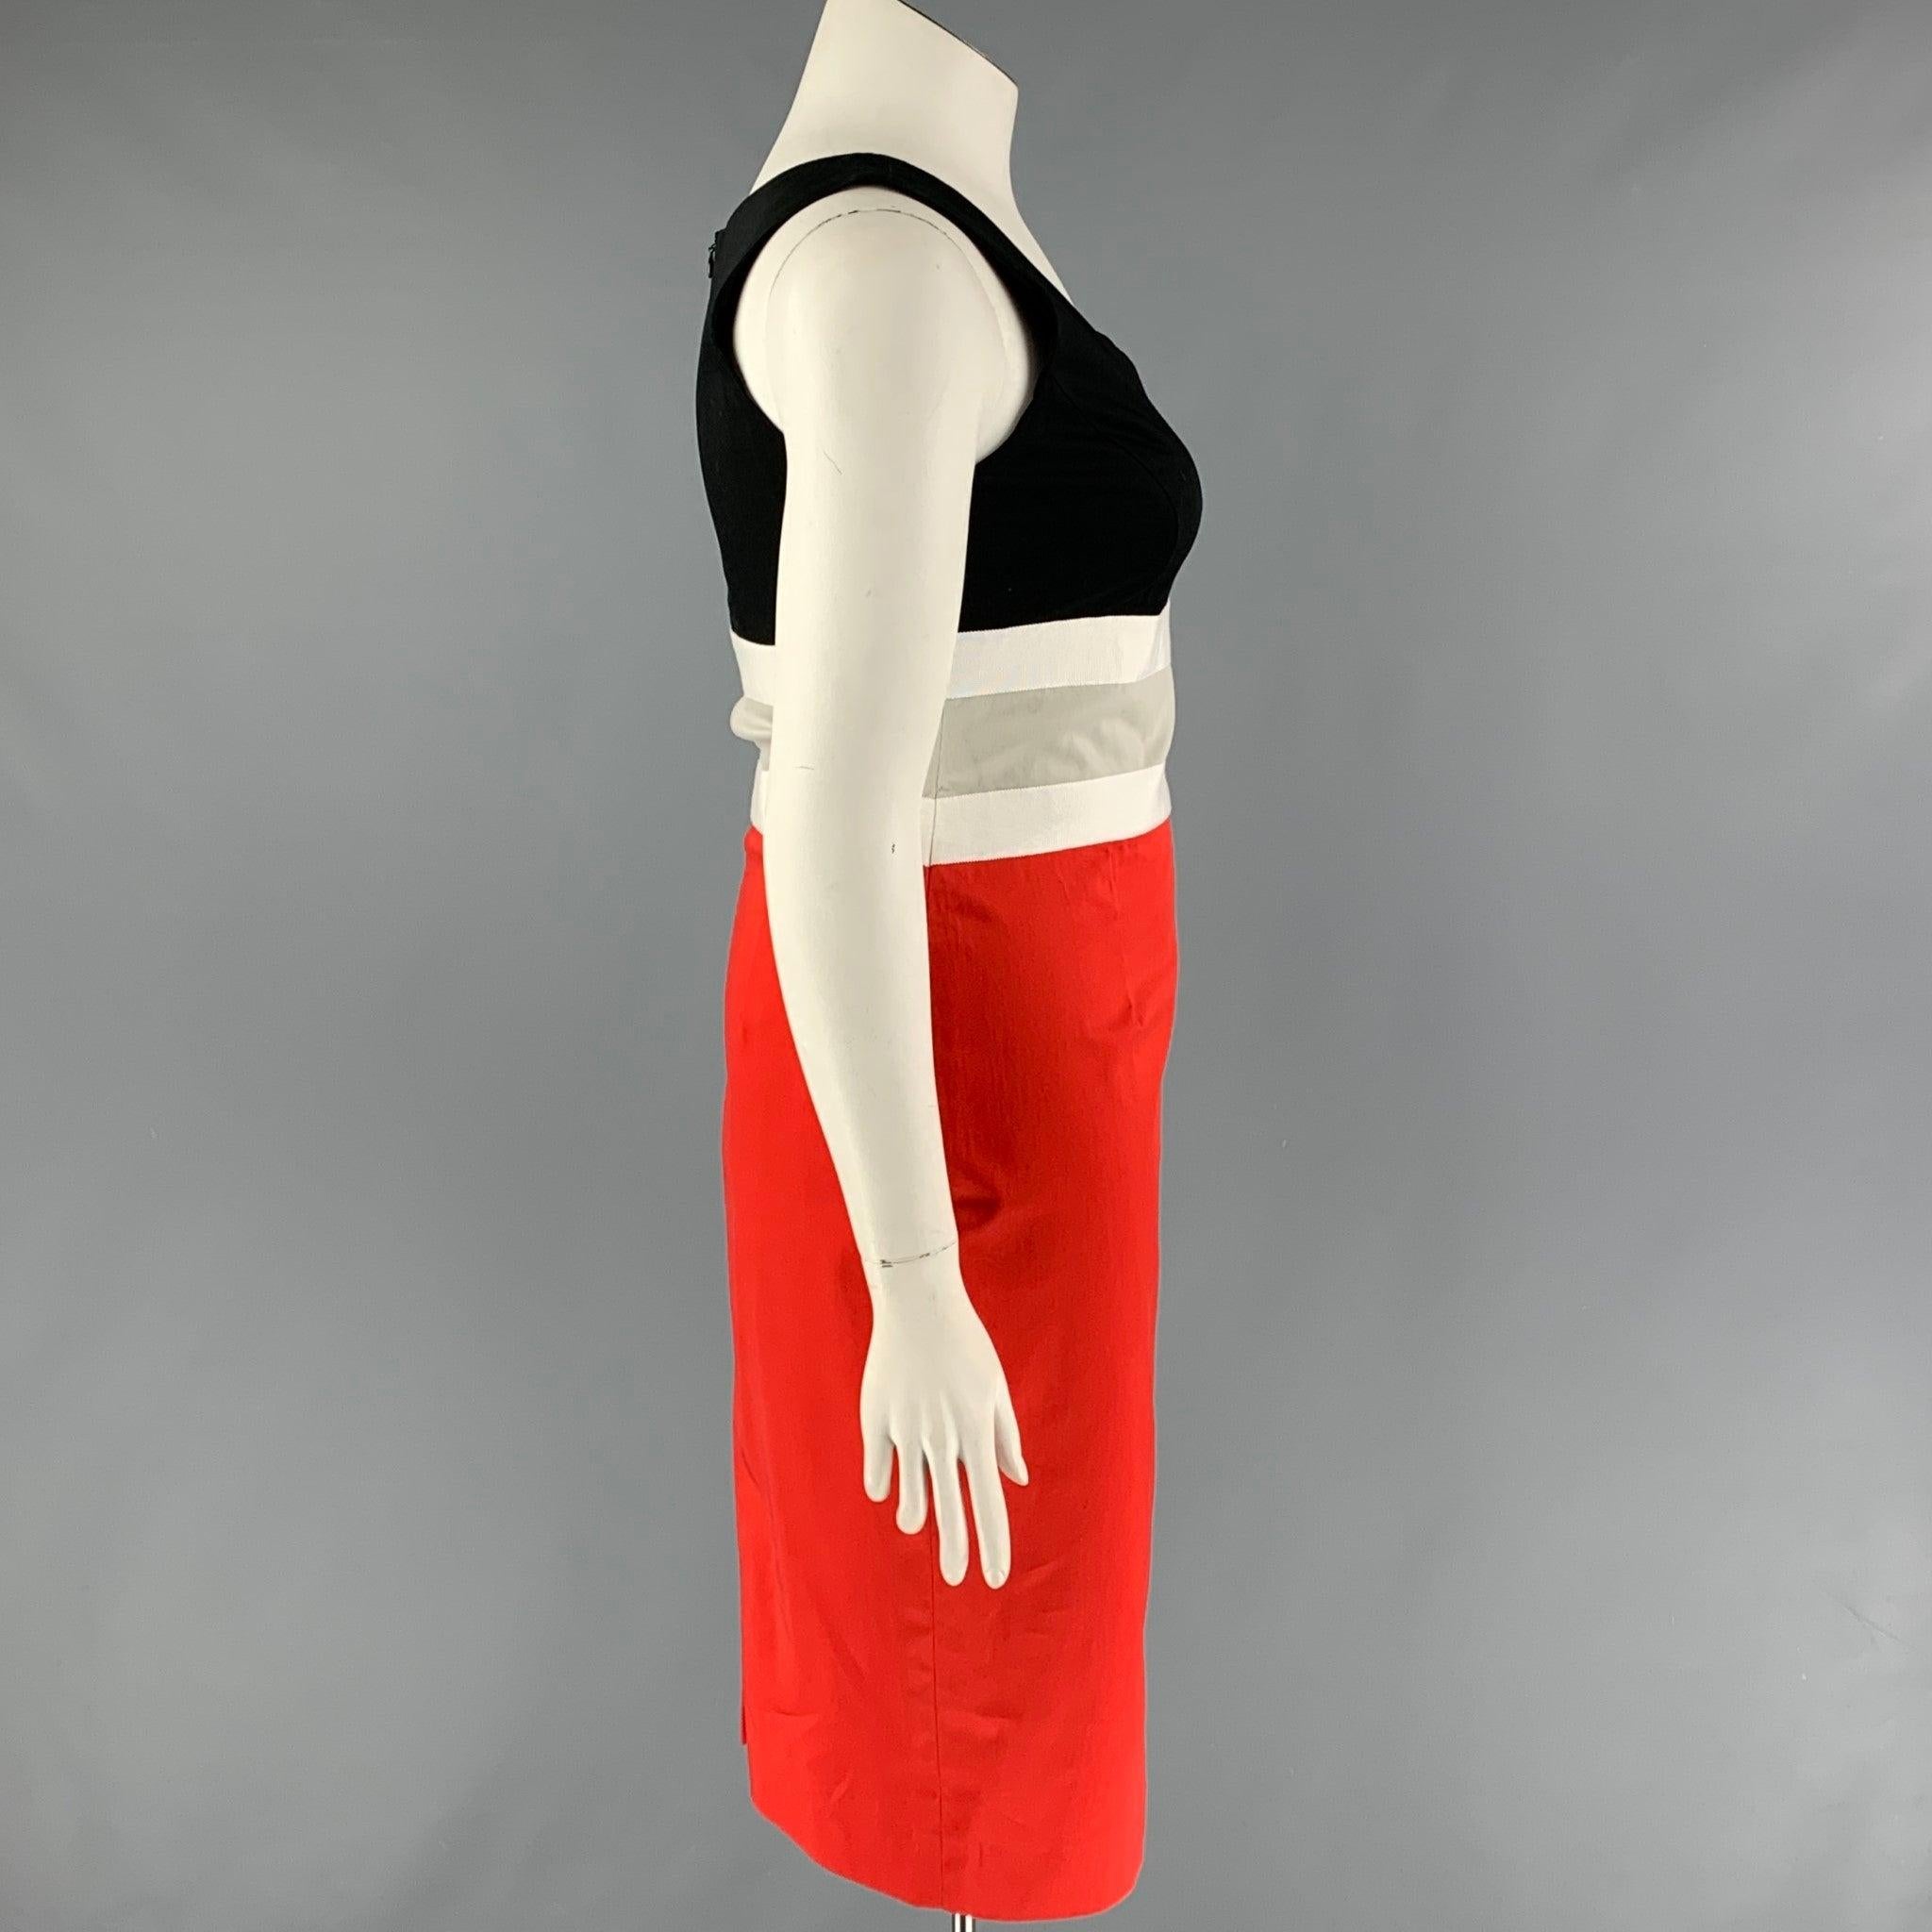 Das Kleid von CAROLINA HERRERA aus rot-schwarzer Baumwolle hat einen Mantel, ist ärmellos, hat einen Ripsbandbesatz und wird am Rücken mit einem Reißverschluss geschlossen.
Sehr gut
Gebrauchtes Zustand. 

Markiert:   10 

Abmessungen: 
 
Schultern: